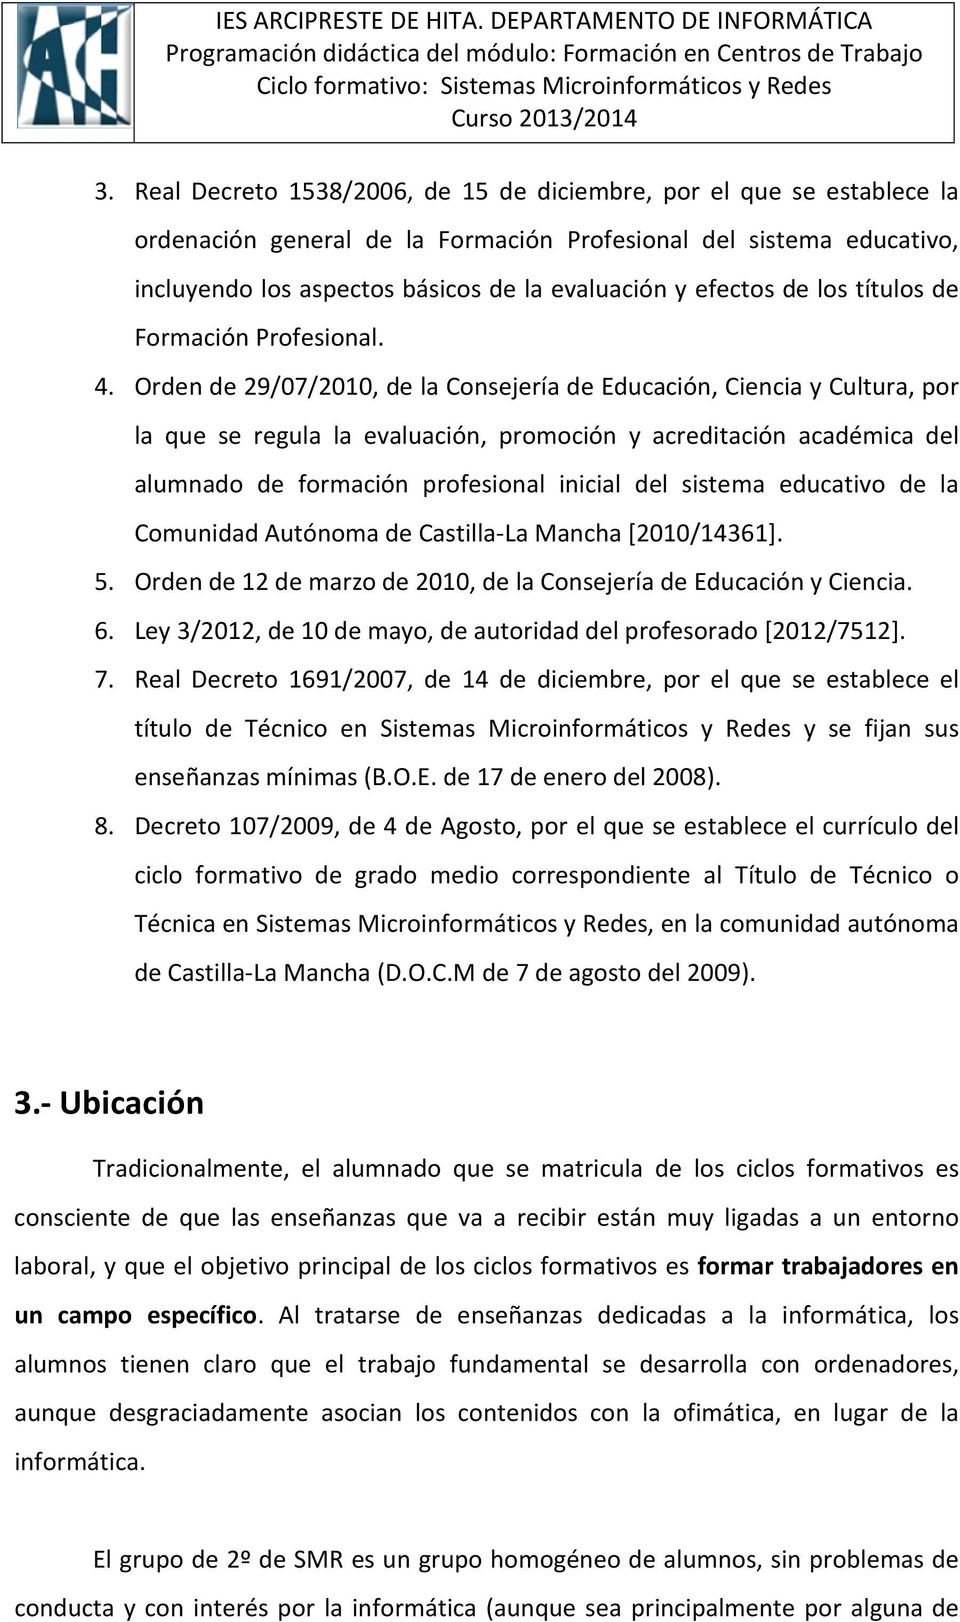 Orden de 29/07/2010, de la Consejería de Educación, Ciencia y Cultura, por la que se regula la evaluación, promoción y acreditación académica del alumnado de formación profesional inicial del sistema